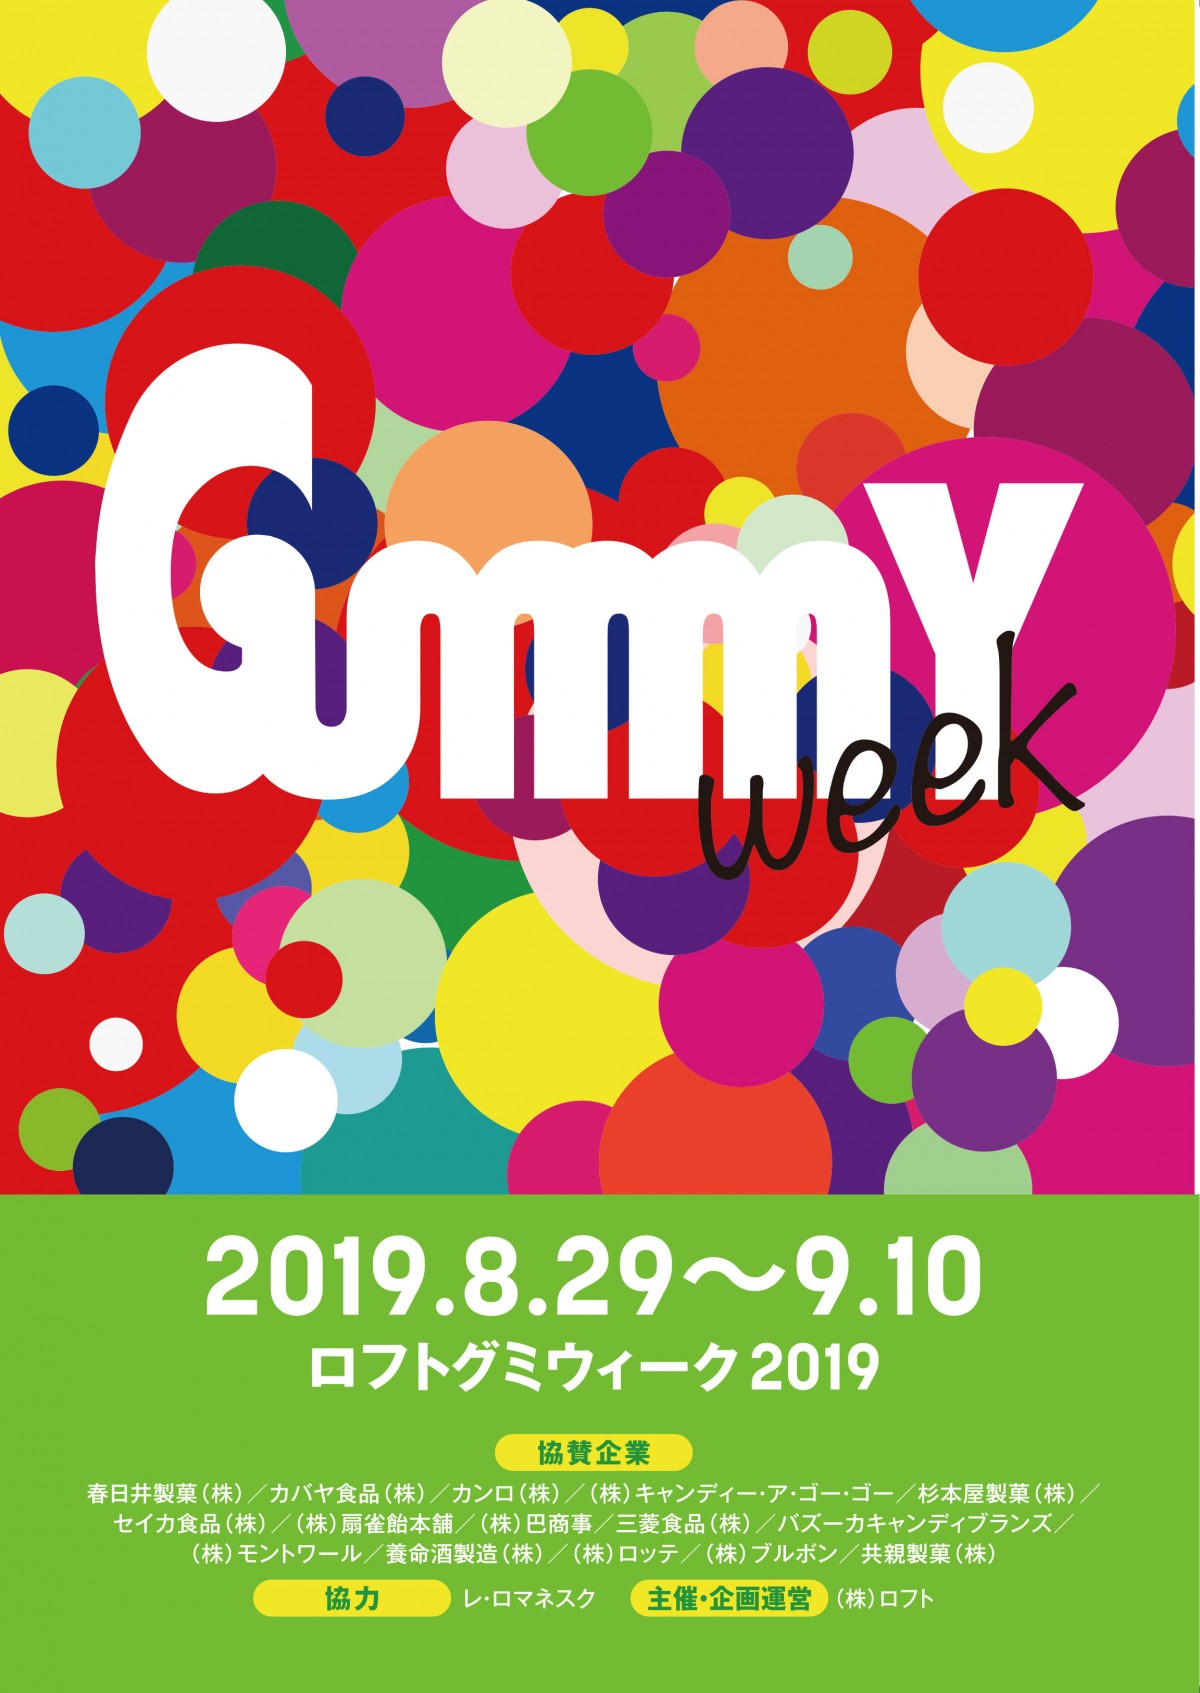 各社のグミ菓子勢ぞろい！ 渋谷ロフトで「Gummy Week 2019」開催